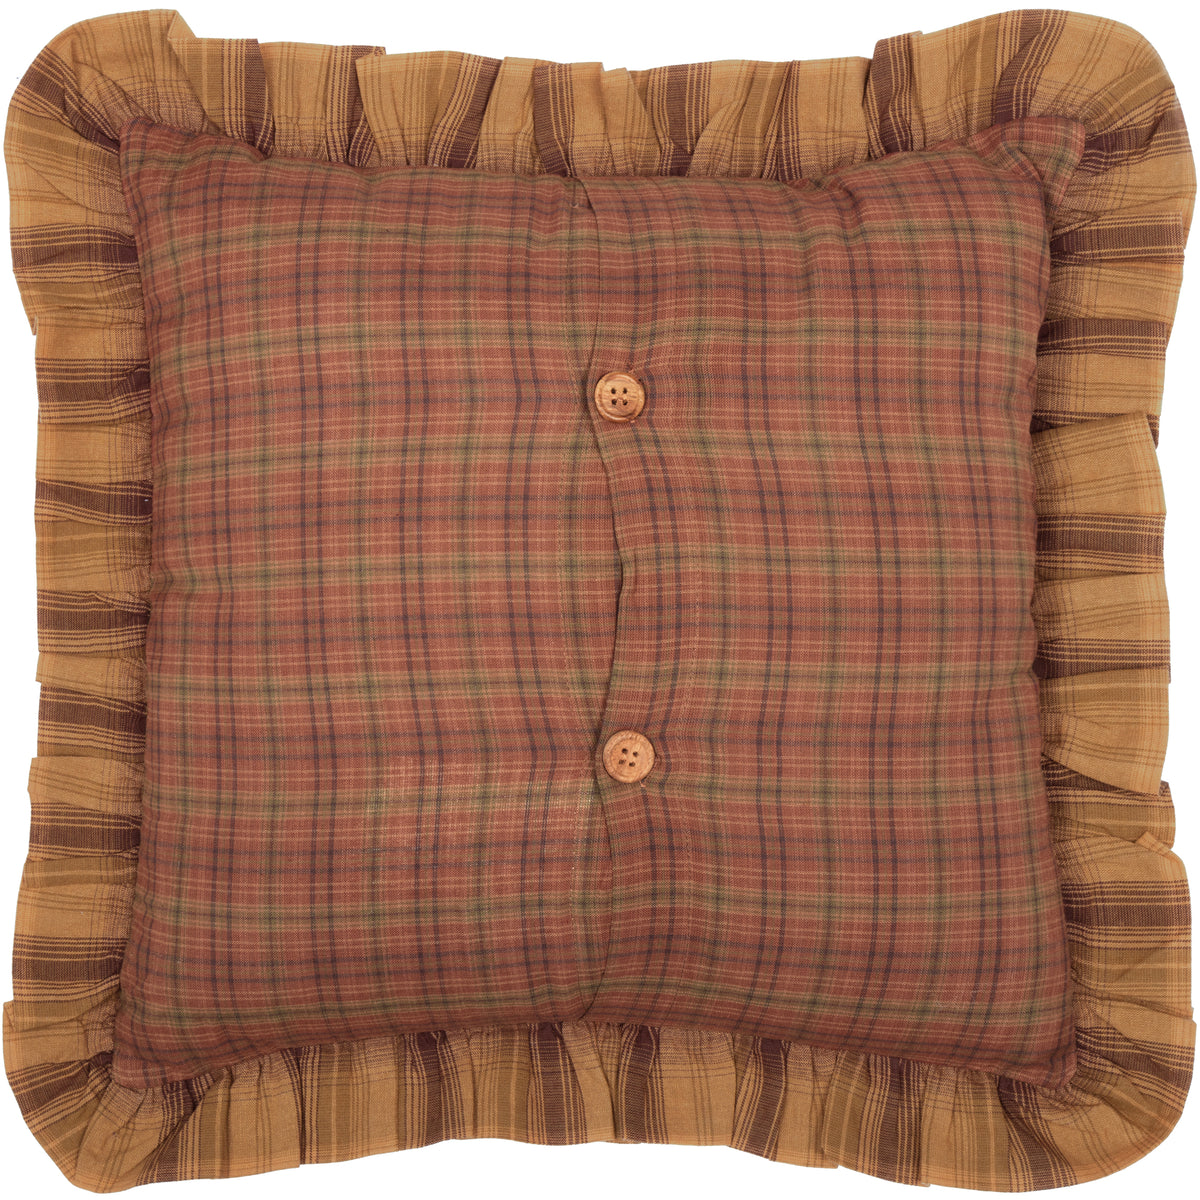 Oak & Asher Prescott Pillow Fabric Ruffled 16x16 By VHC Brands